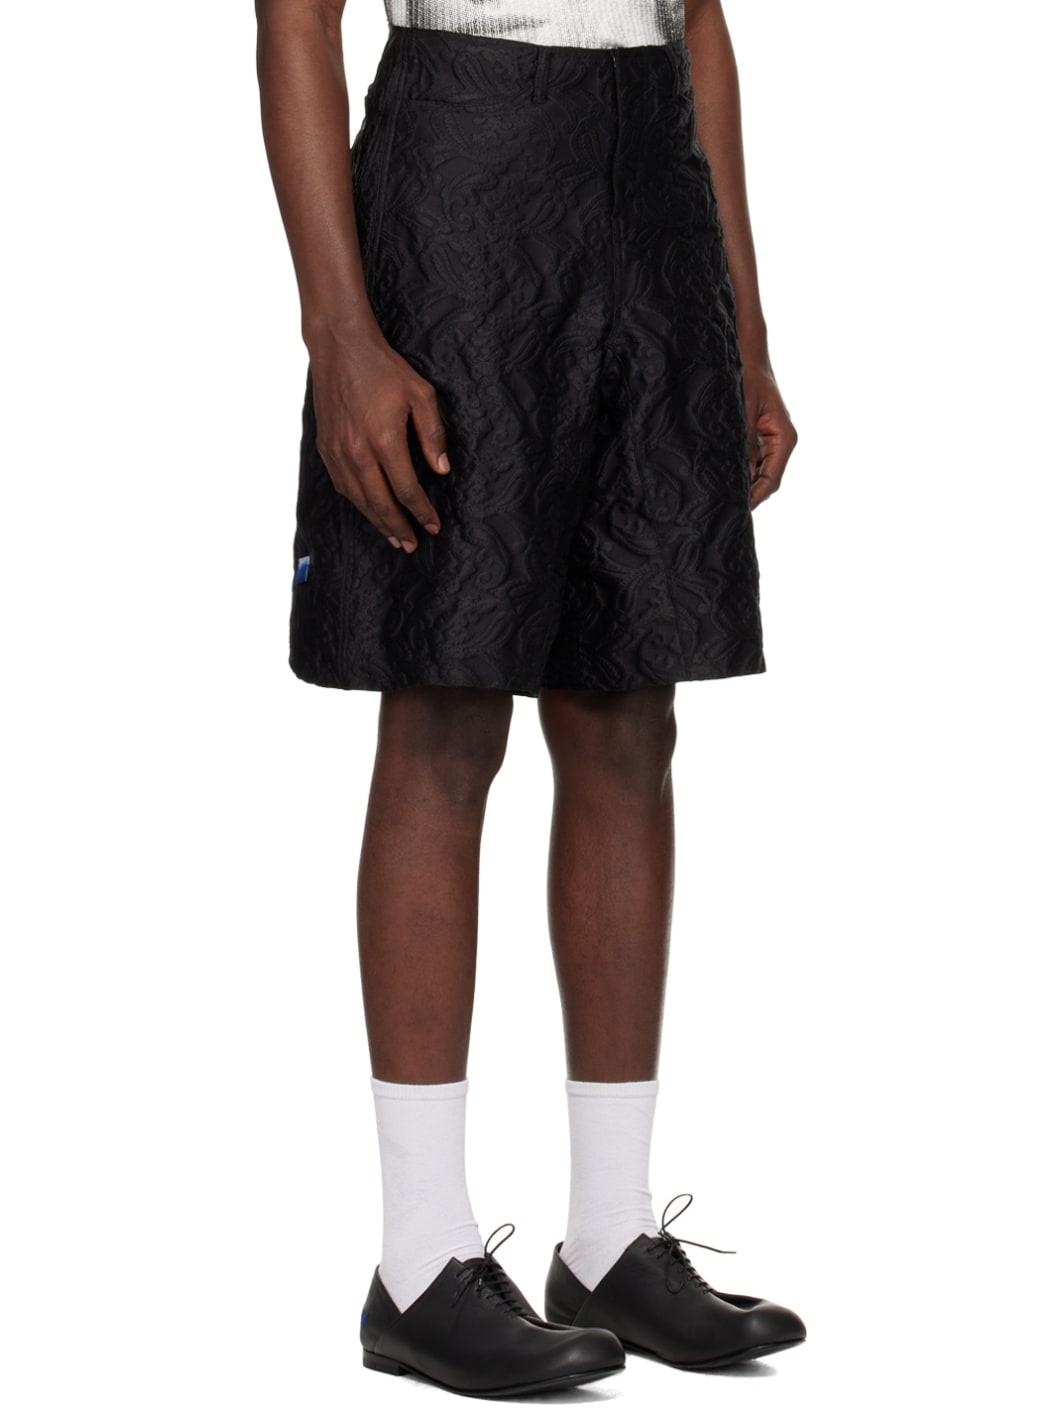 Black Paneled Shorts - 2